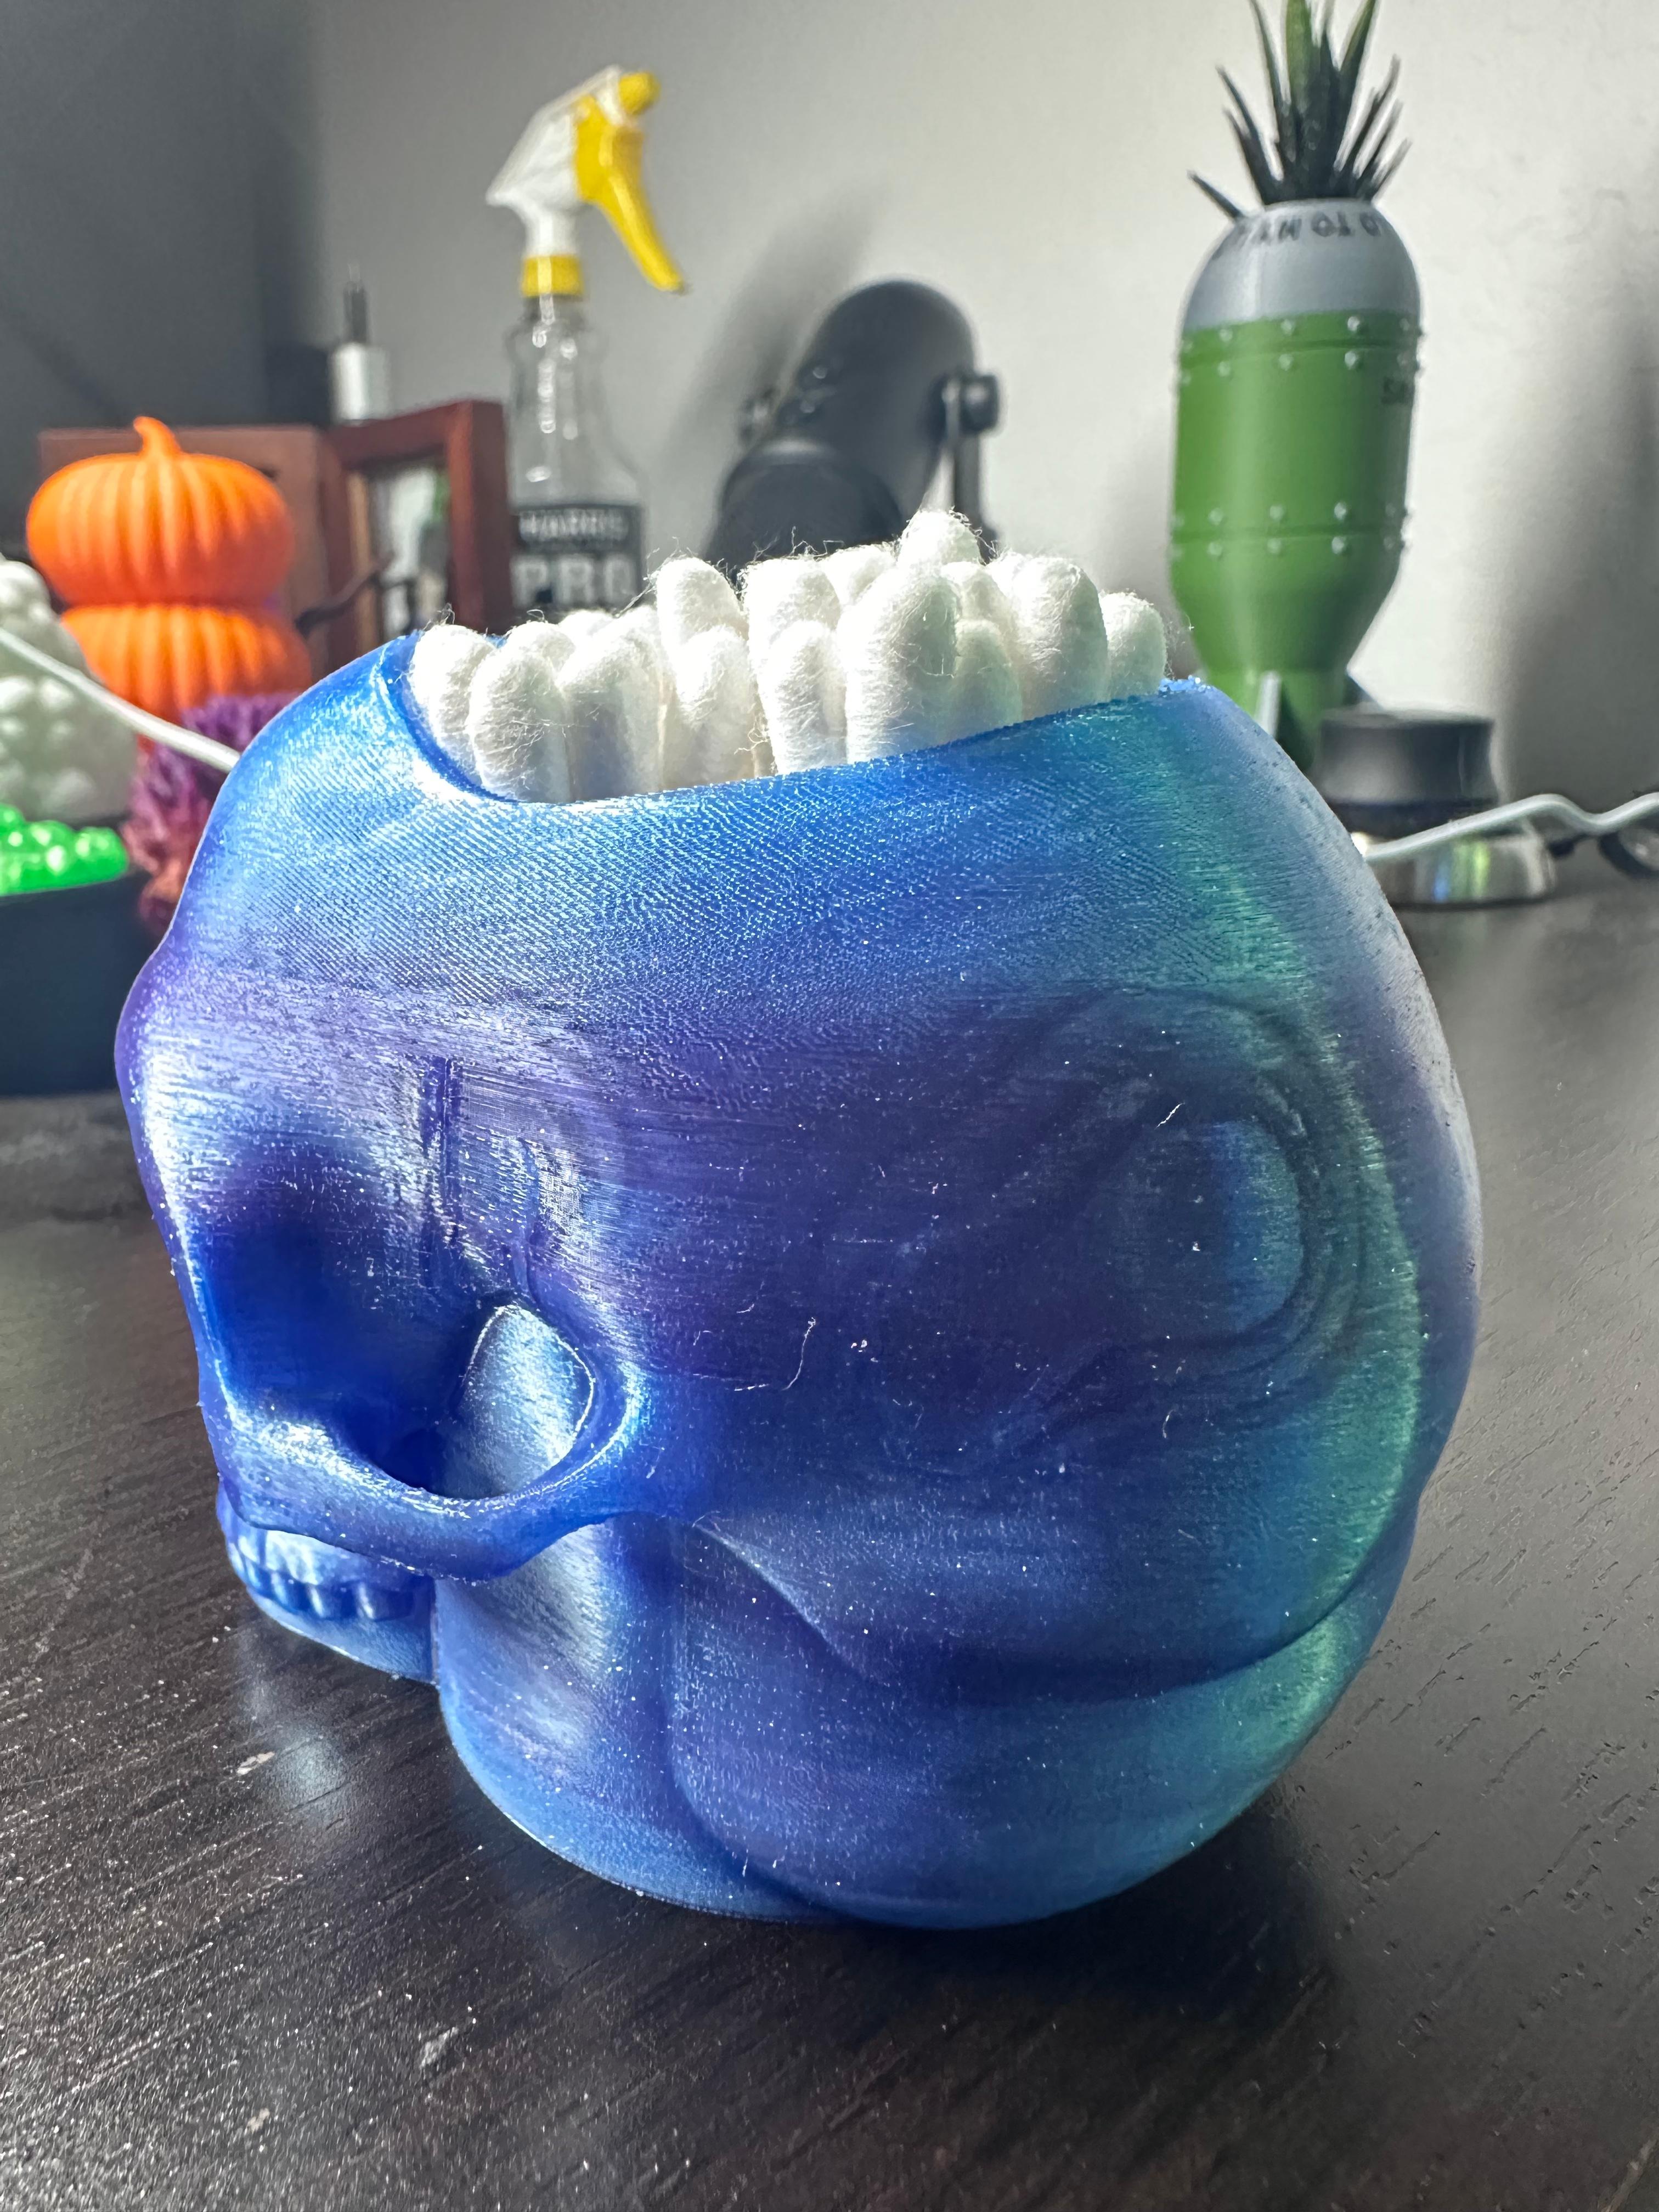 Skull Candy Bowl 3d model